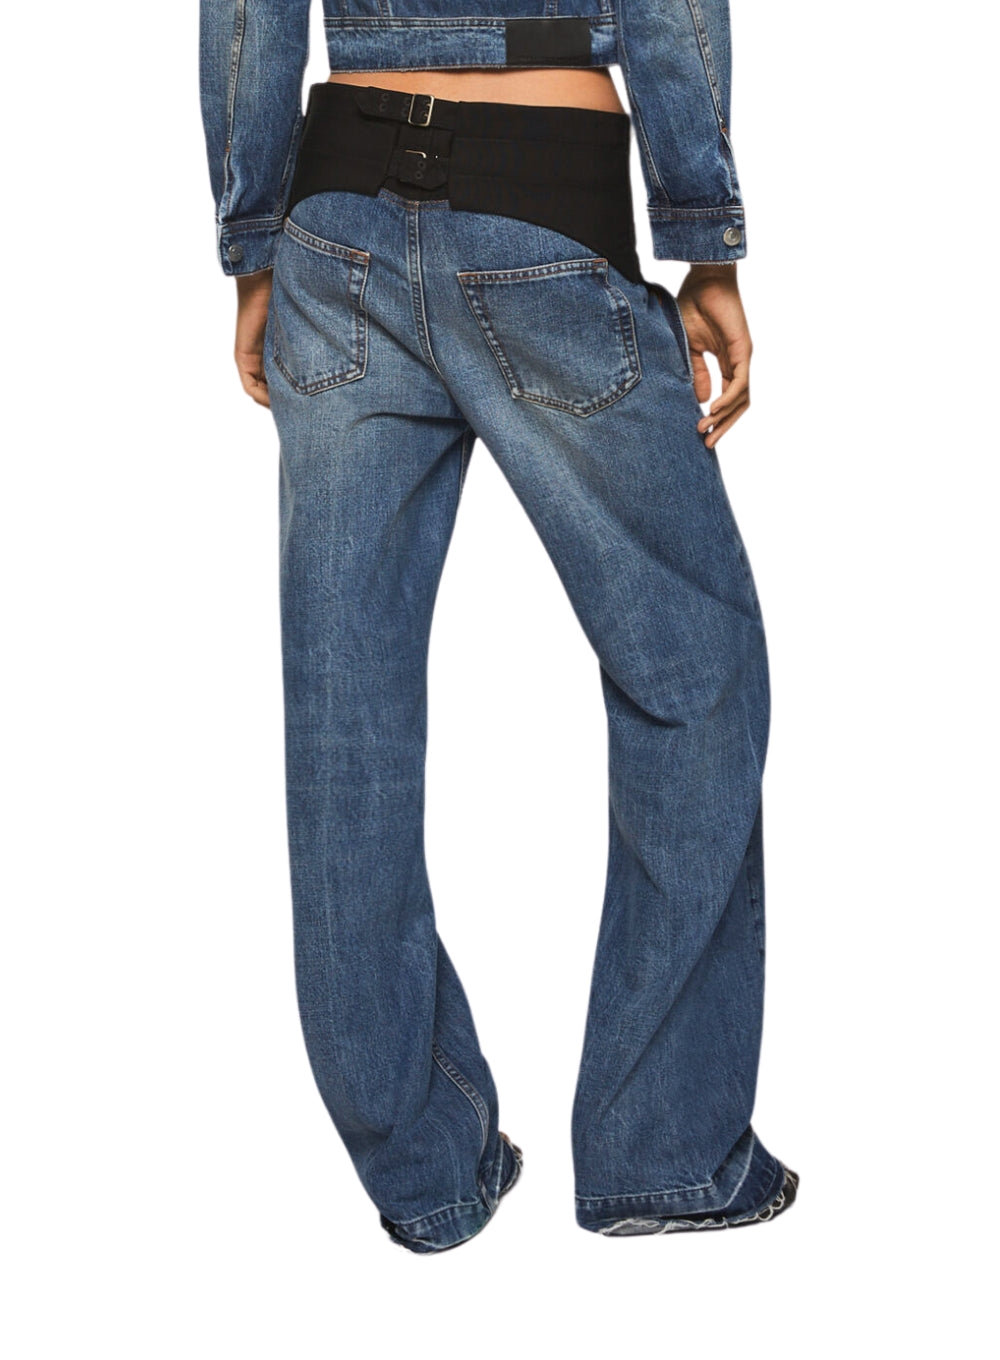 STELLA MCCARTNEY | Tuxedo-Inspired Denim Jeans